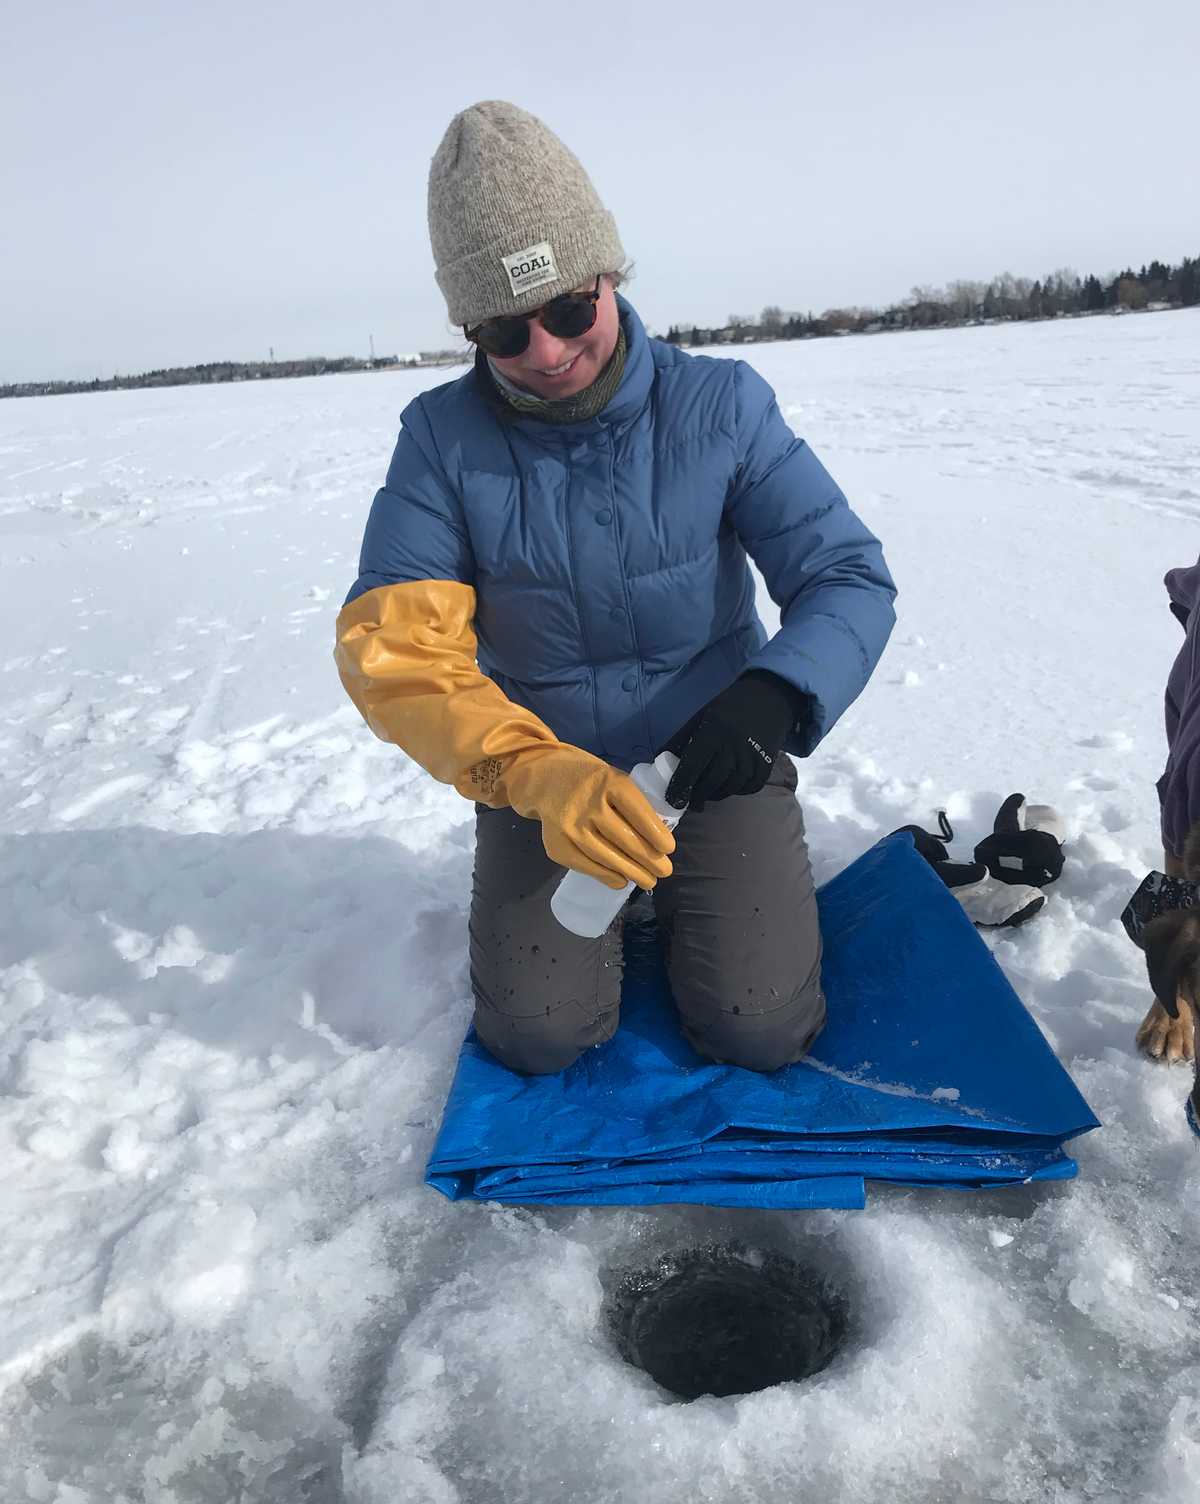 Mary Kruk, de DataStream, apprend comment les bénévoles d’hiver de LakeKeeper recueillent des données sur la qualité de l’eau, en utilisant une sonde pour mesurer la température et l’oxygène dissous, et en collectant des échantillons d’eau en bouteille pour les analyser en laboratoire.